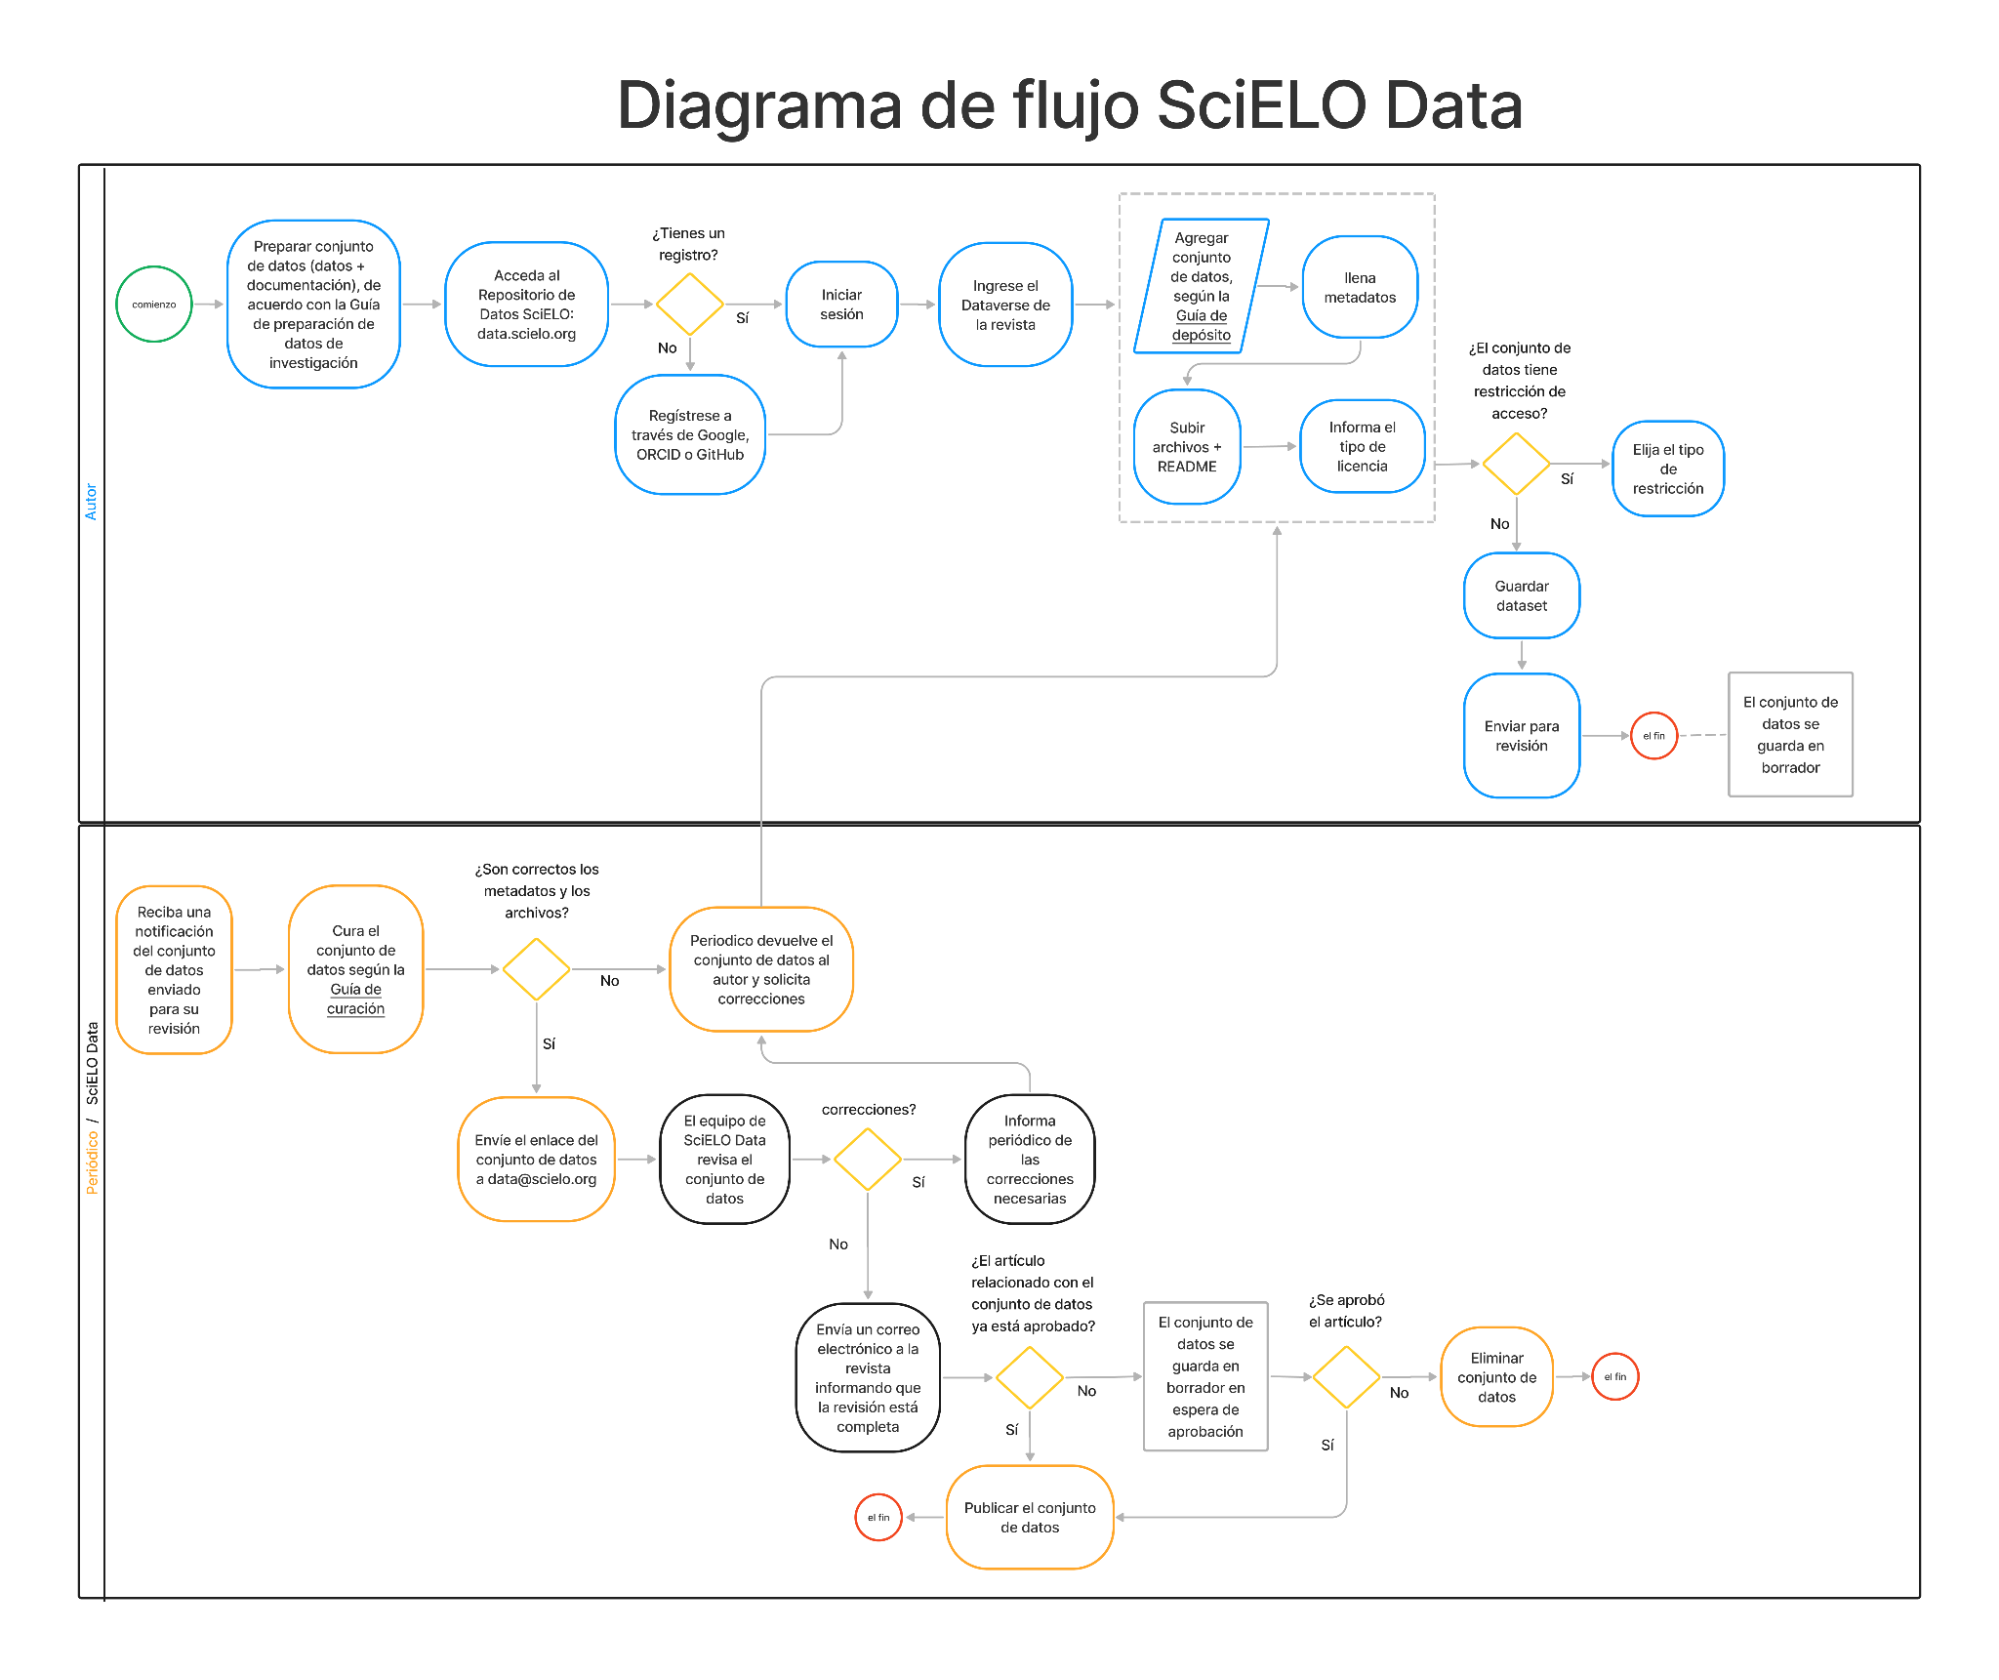 Diagrama de flujo de SciELO Data